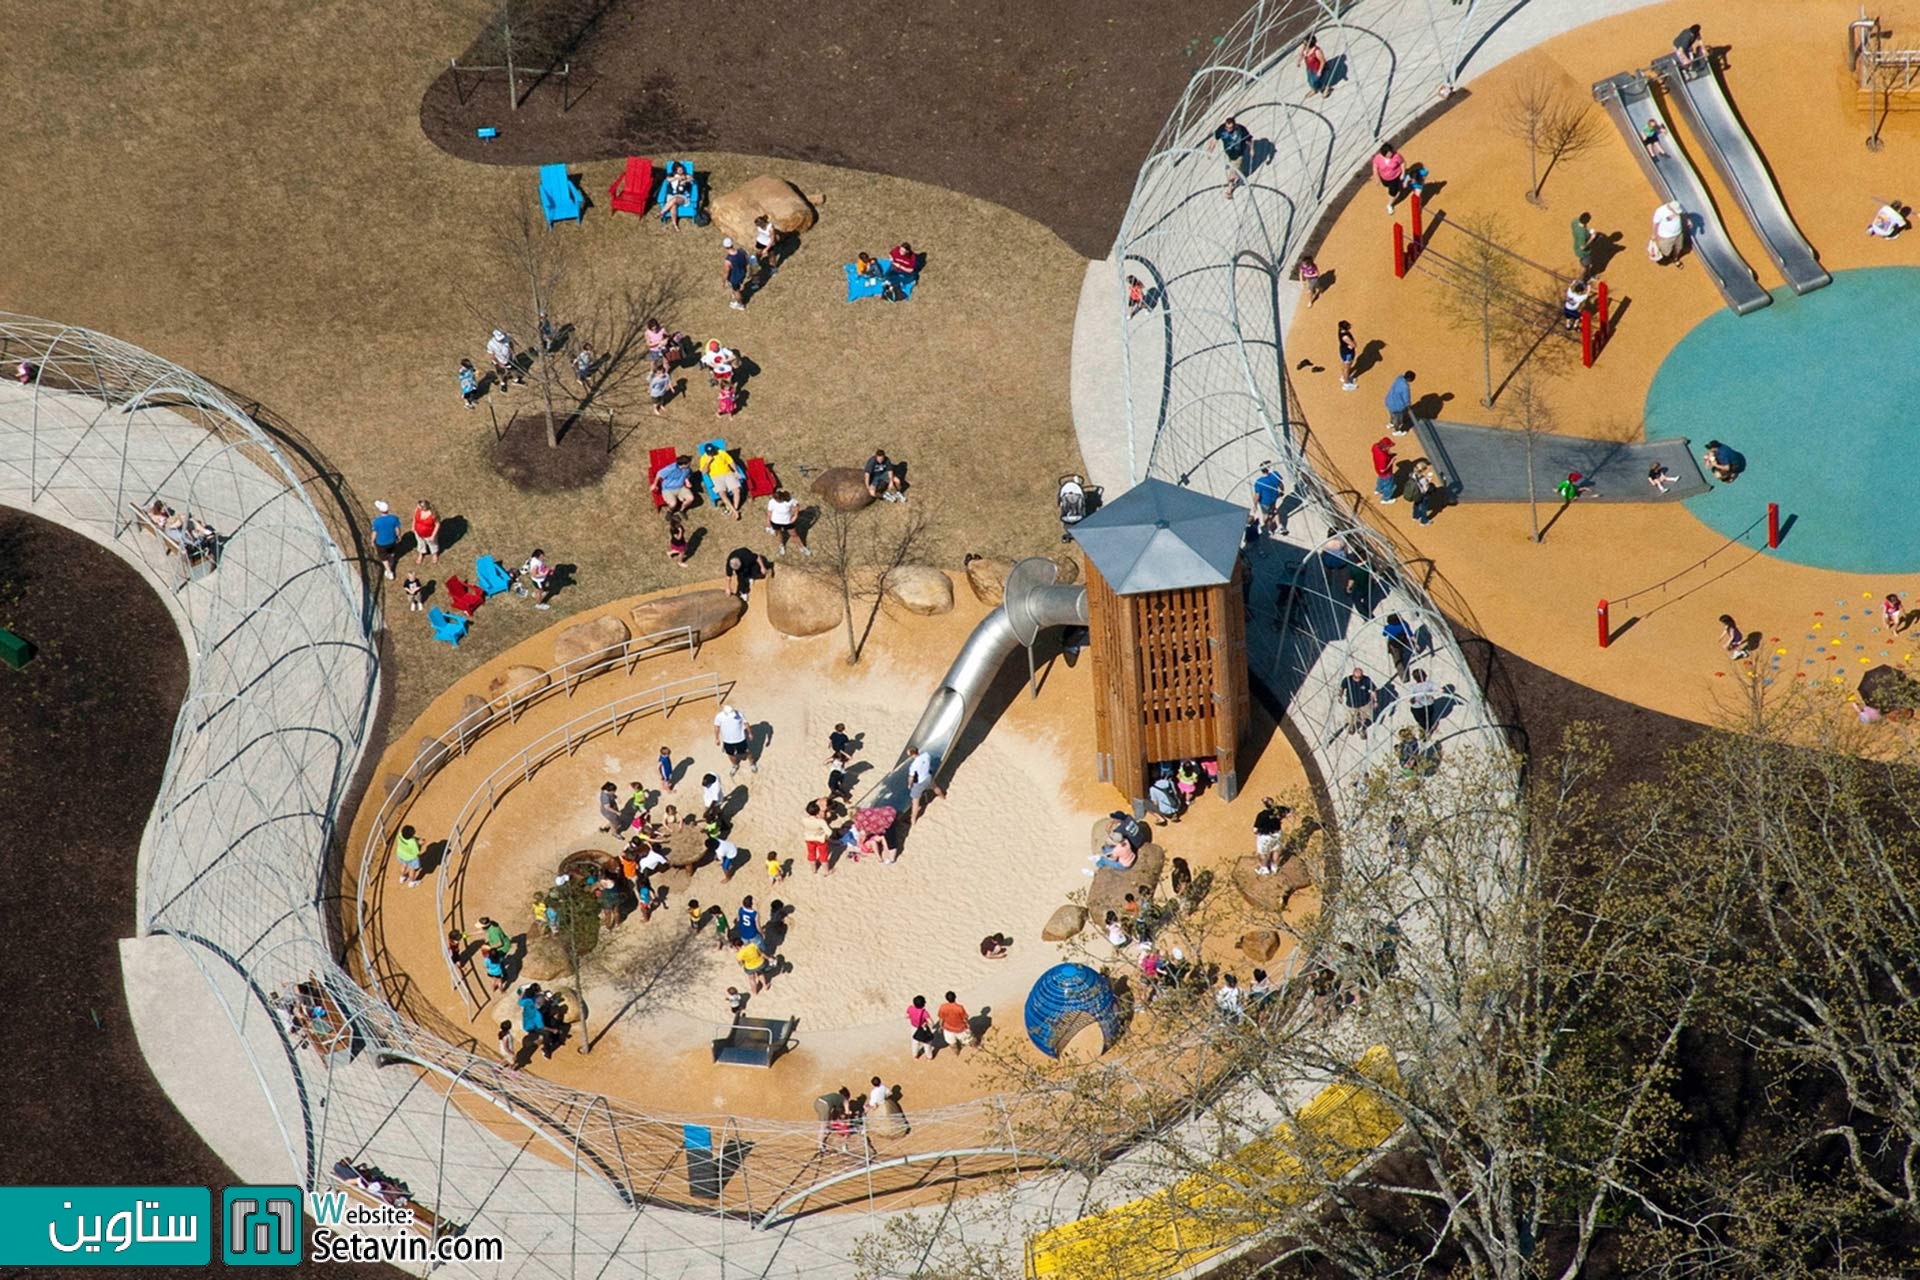 پارک SHELBY ،سرزمینی برای بازی و اکتشاف کودکان